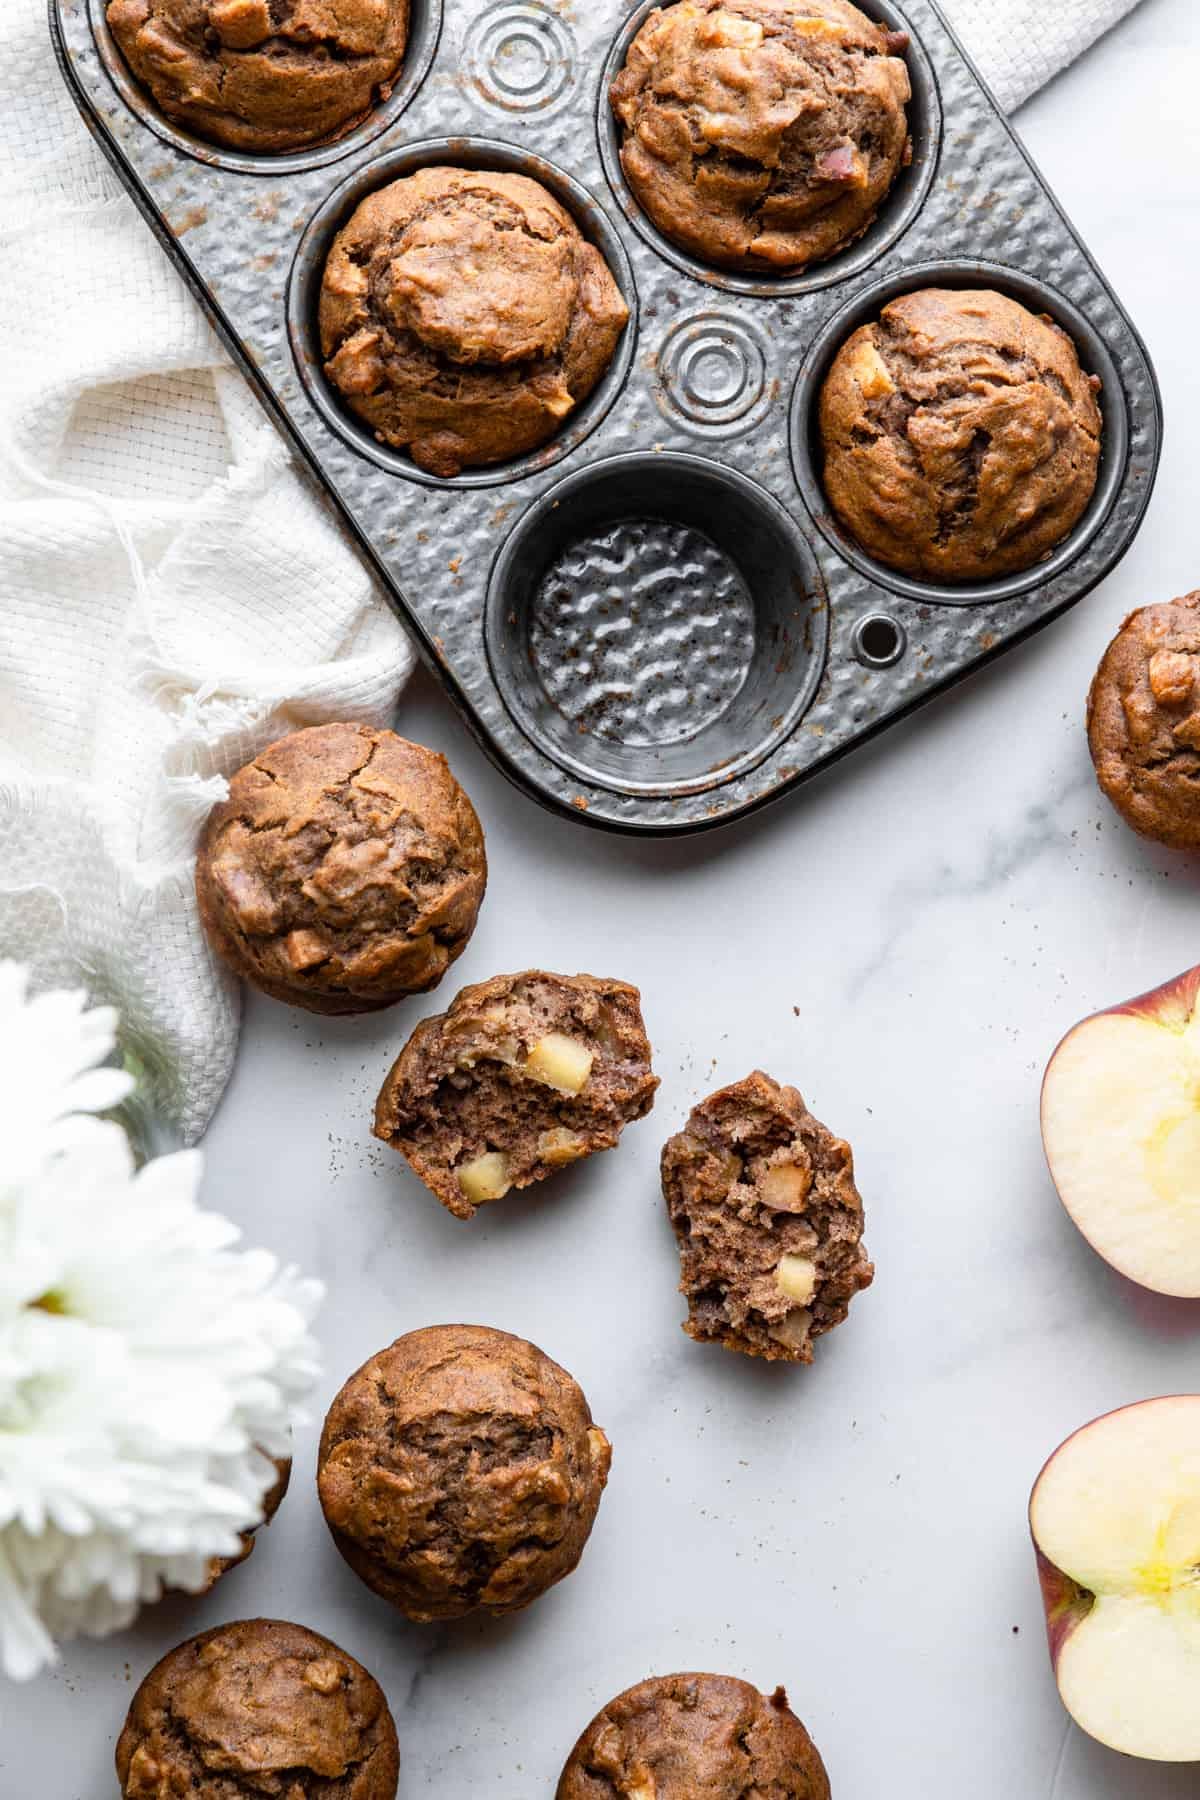 Apple Banana Muffins in a muffin pan